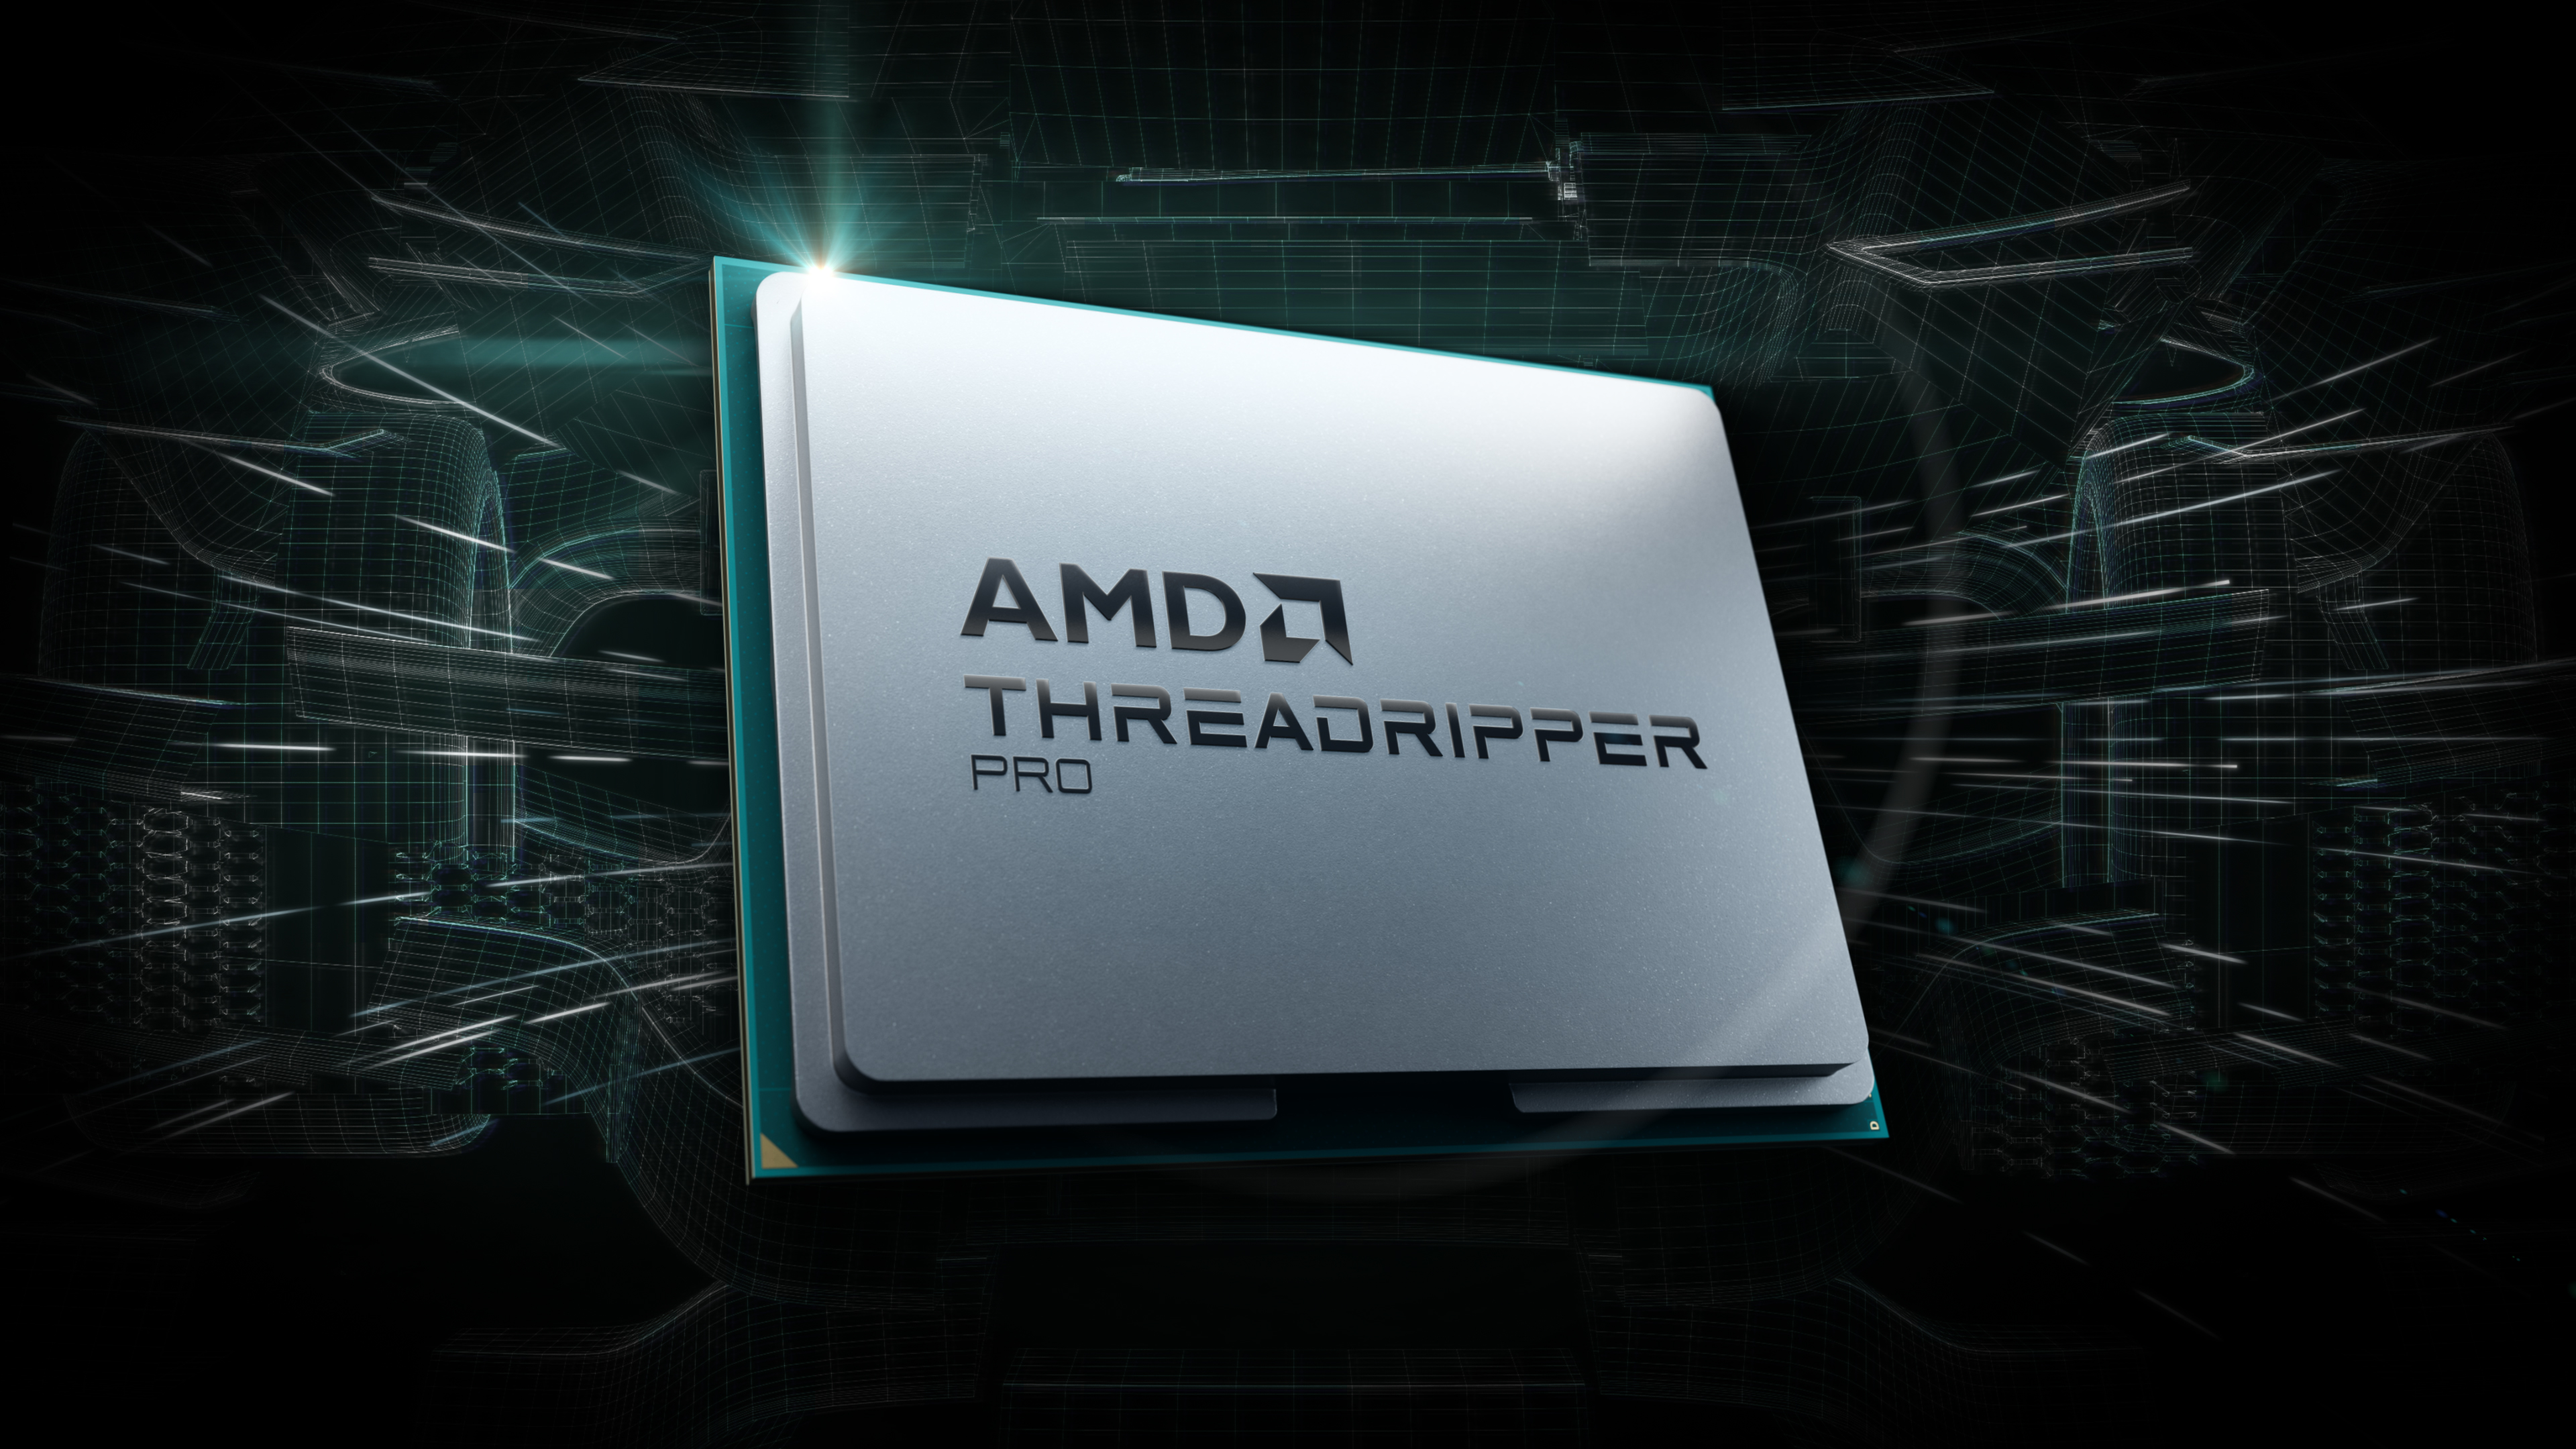 AMD_TR_Pro_100623_02.jpg